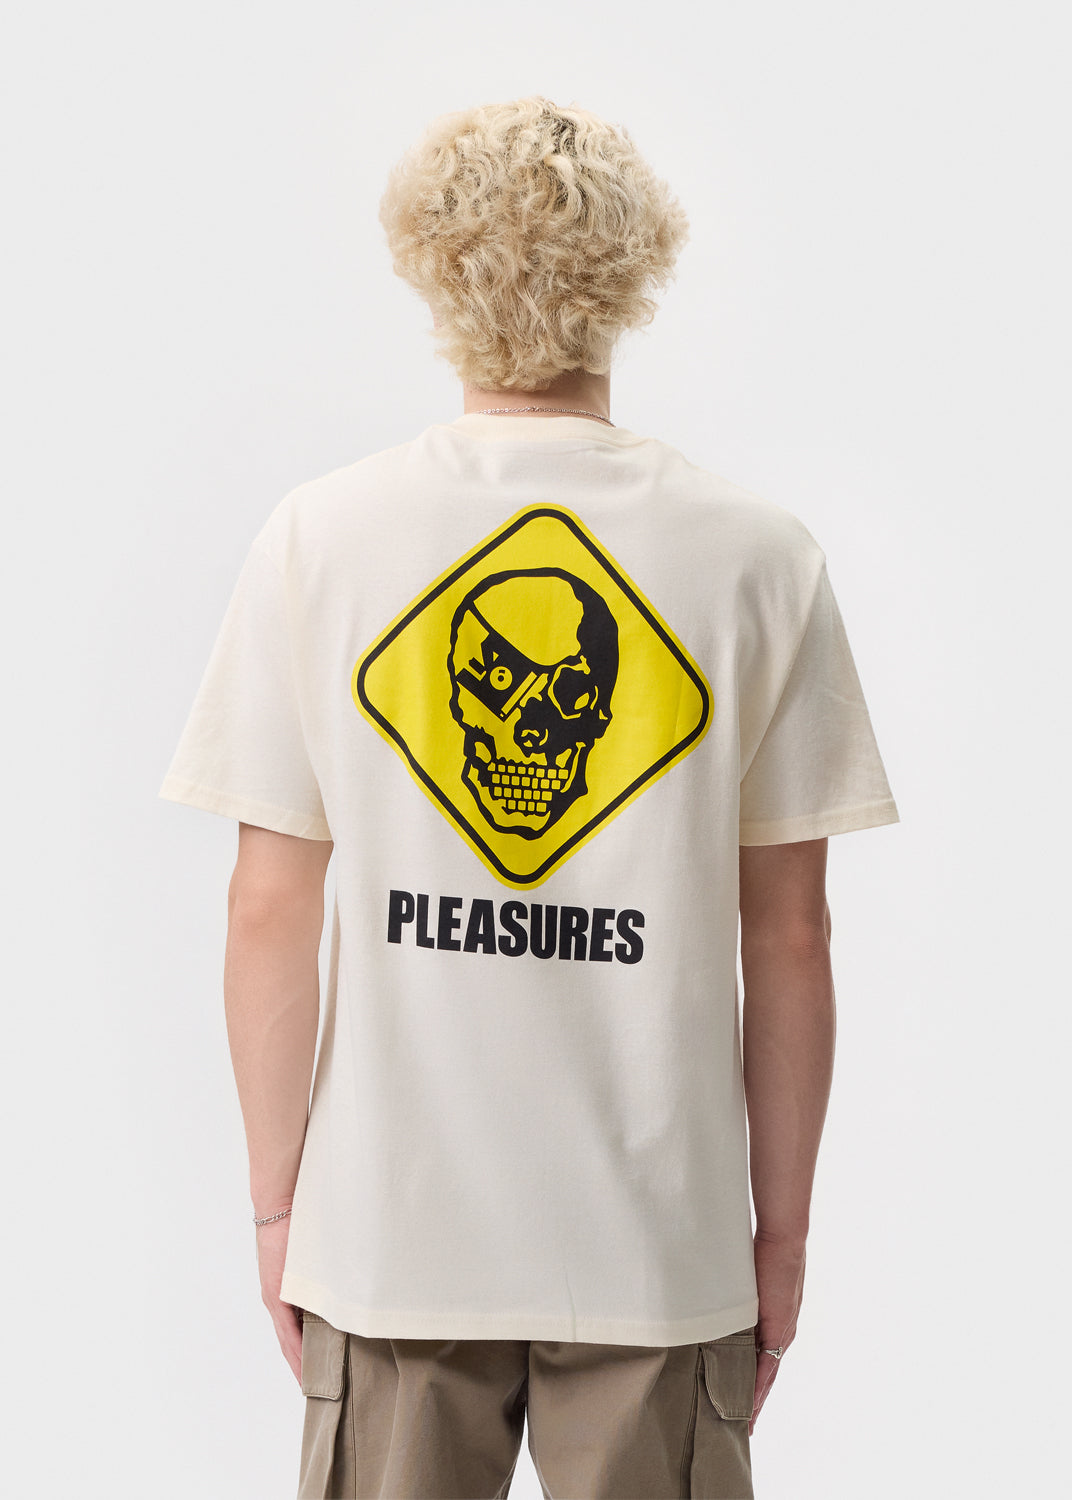 Pleasures - Natural Martians T-Shirt | 1032 SPACE